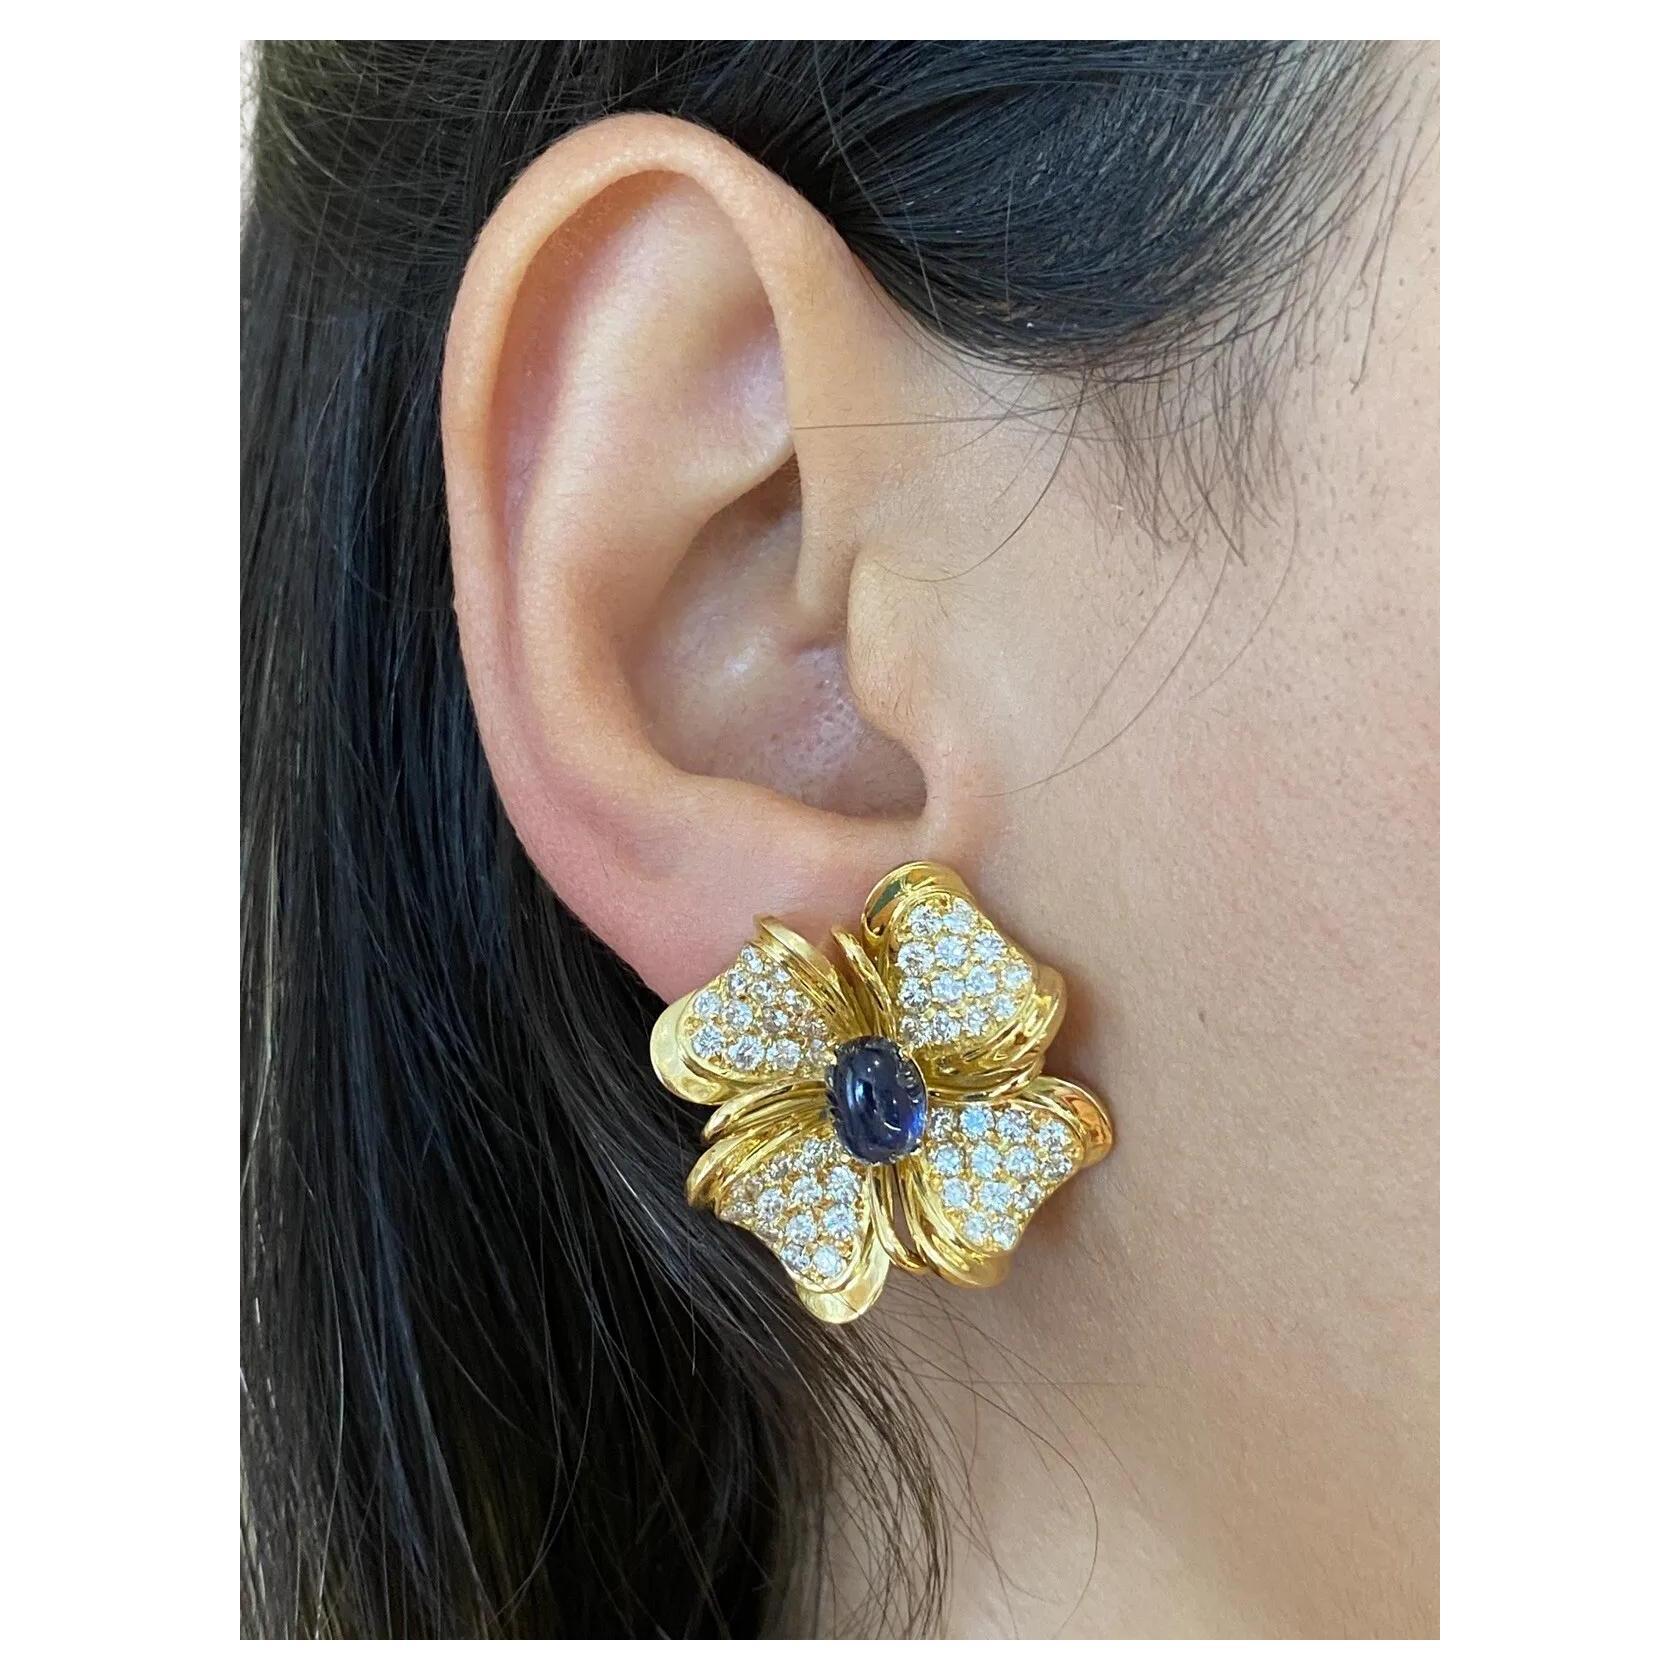 Boucles d'oreilles fleurs en or jaune 18 carats, diamants et saphirs

Les boucles d'oreilles Fleur de saphir et de diamant présentent des diamants ronds et brillants sertis en pavé dans un motif de fleur avec un saphir bleu cabochon de forme ovale